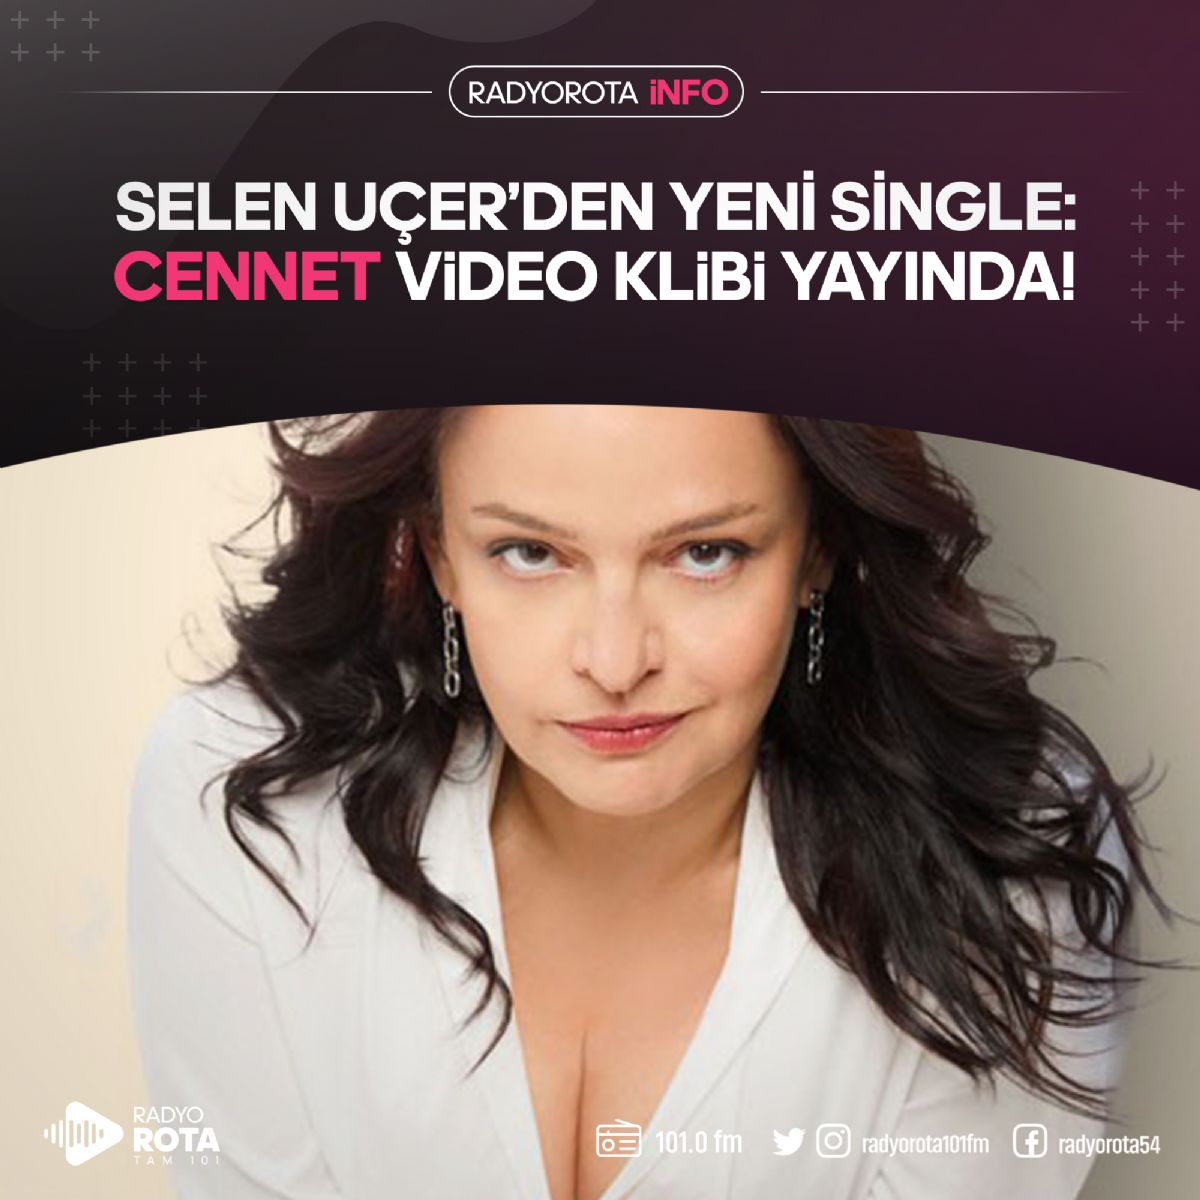 Selen Uçer'den Yeni Single 'CENNET'